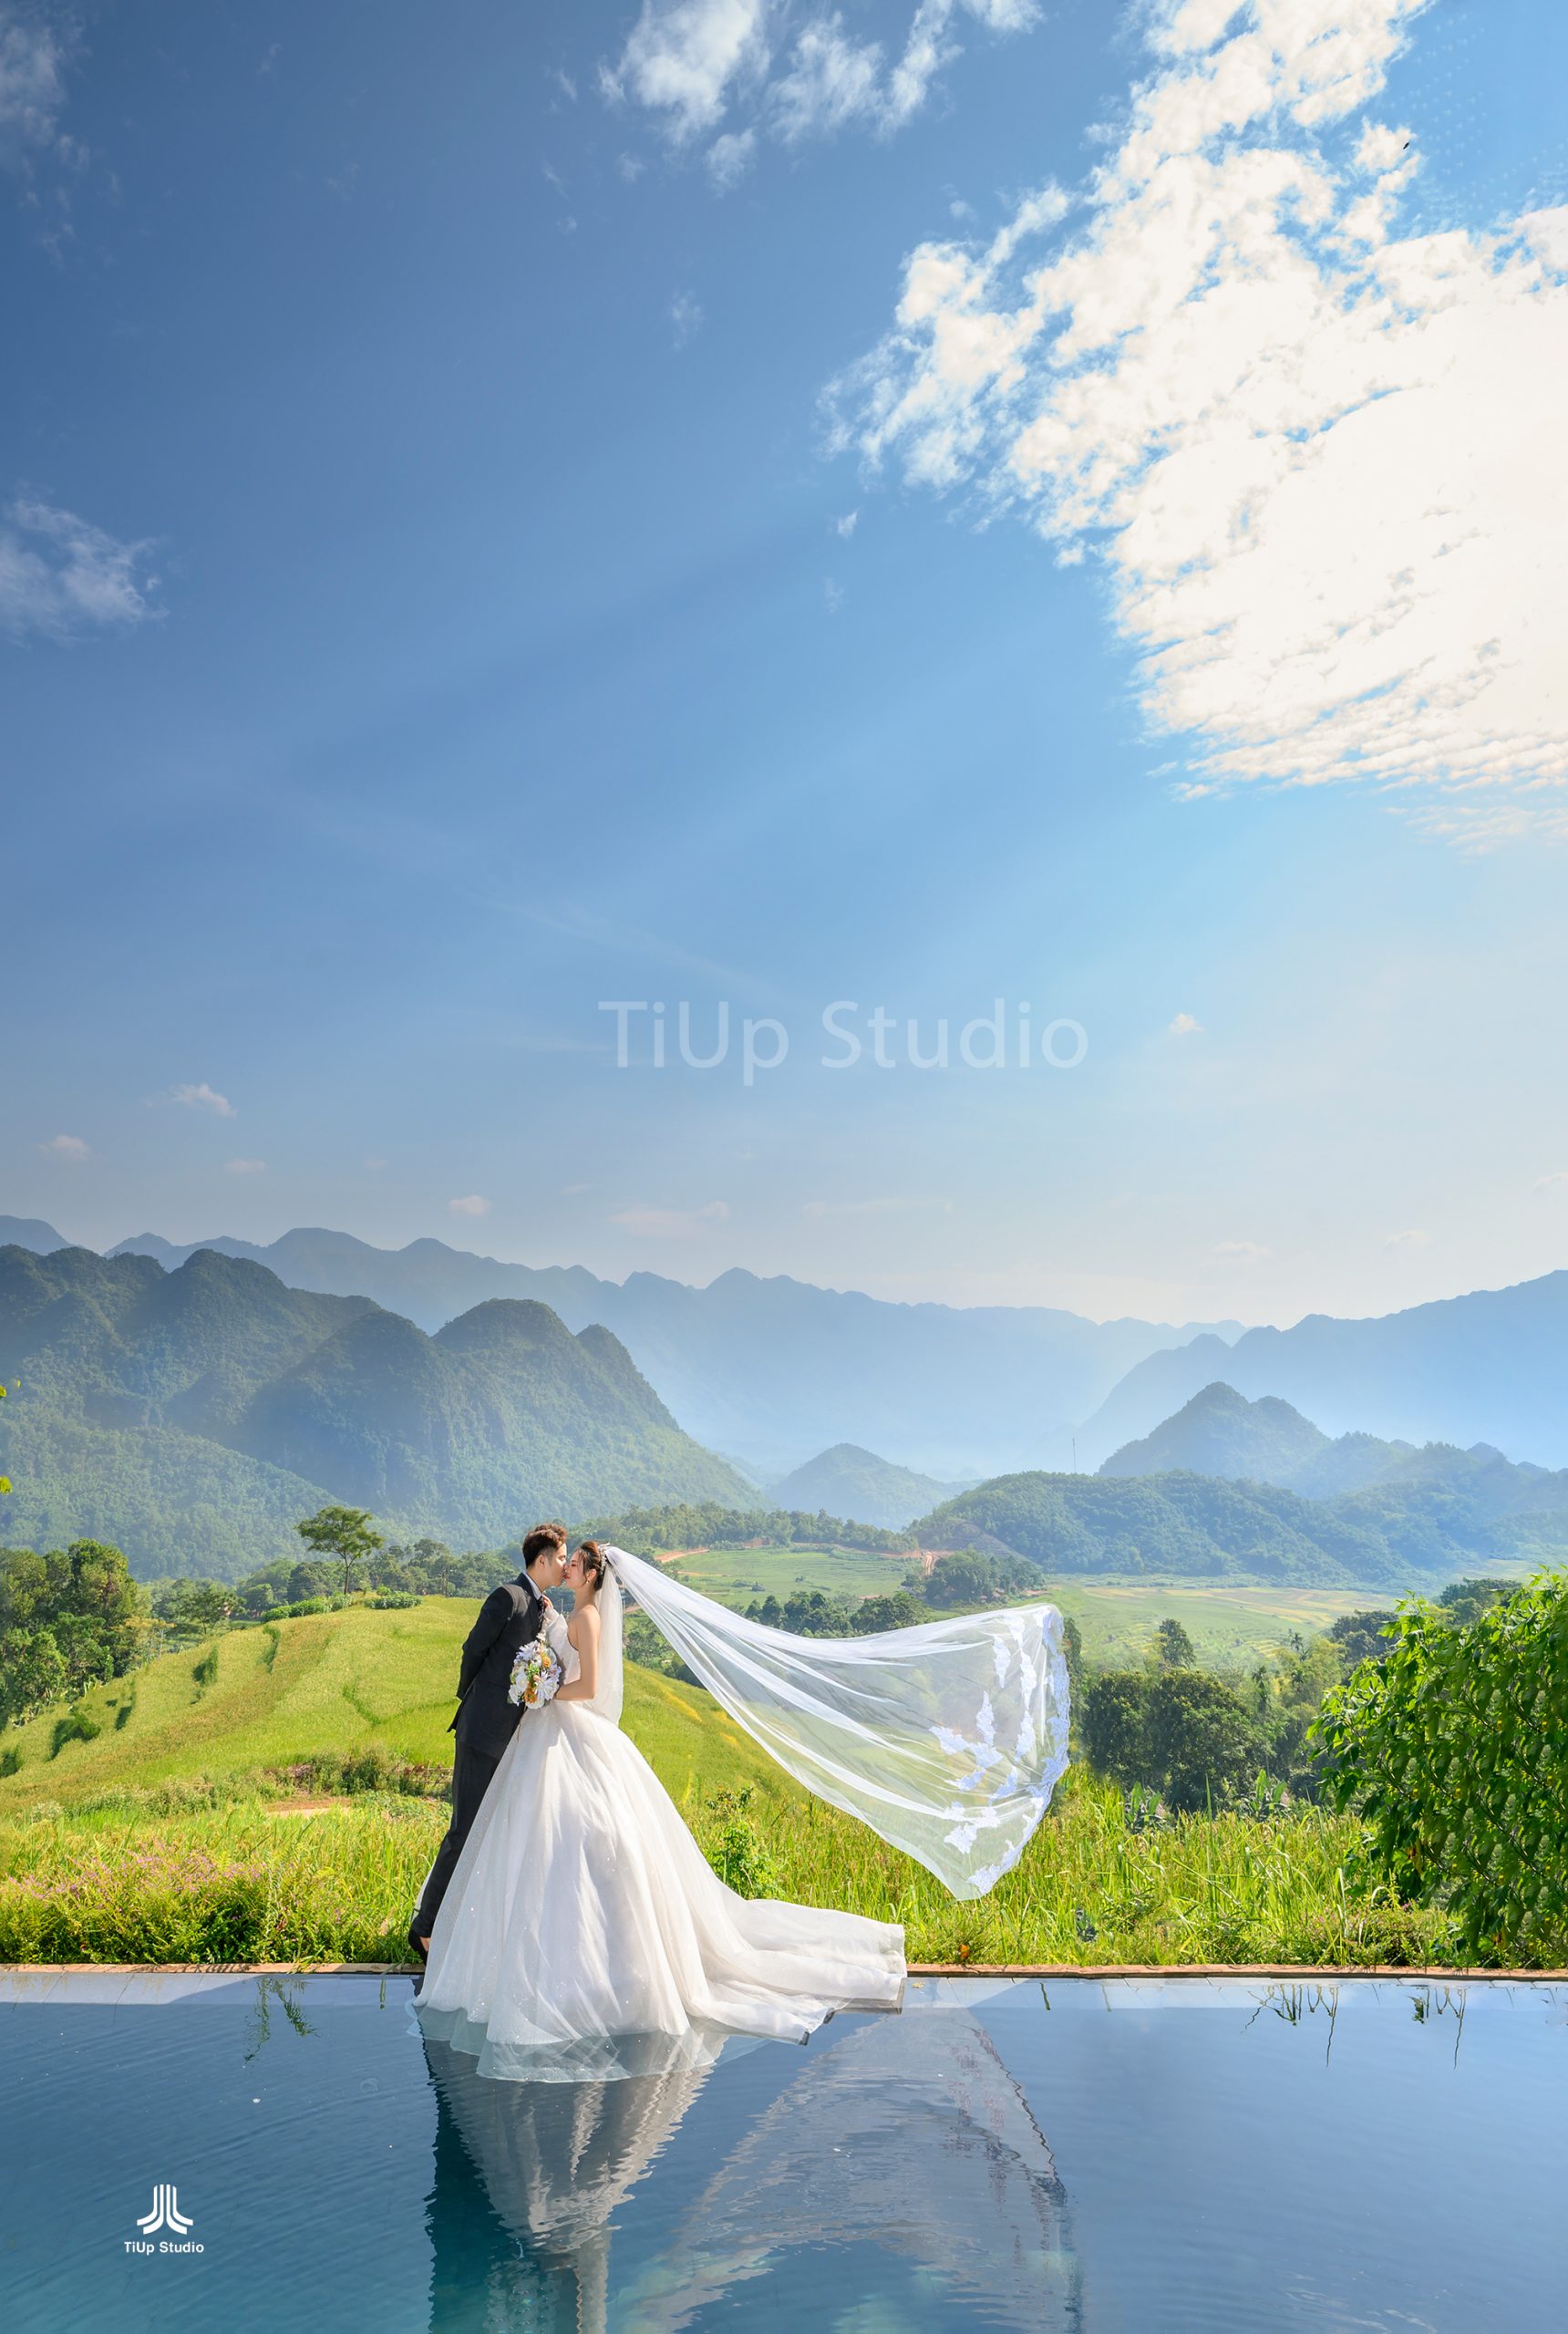 Bộ ảnh cưới của cặp đôi tại Phú Yên sẽ khiến bạn phải trầm trồ khen ngợi, với phong cách trang trí độc đáo và tinh tế, hòa trộn cùng không khí tự nhiên của biển và núi sẽ tạo nên một không gian cưới lãng mạn và đậm chất điêu khắc.